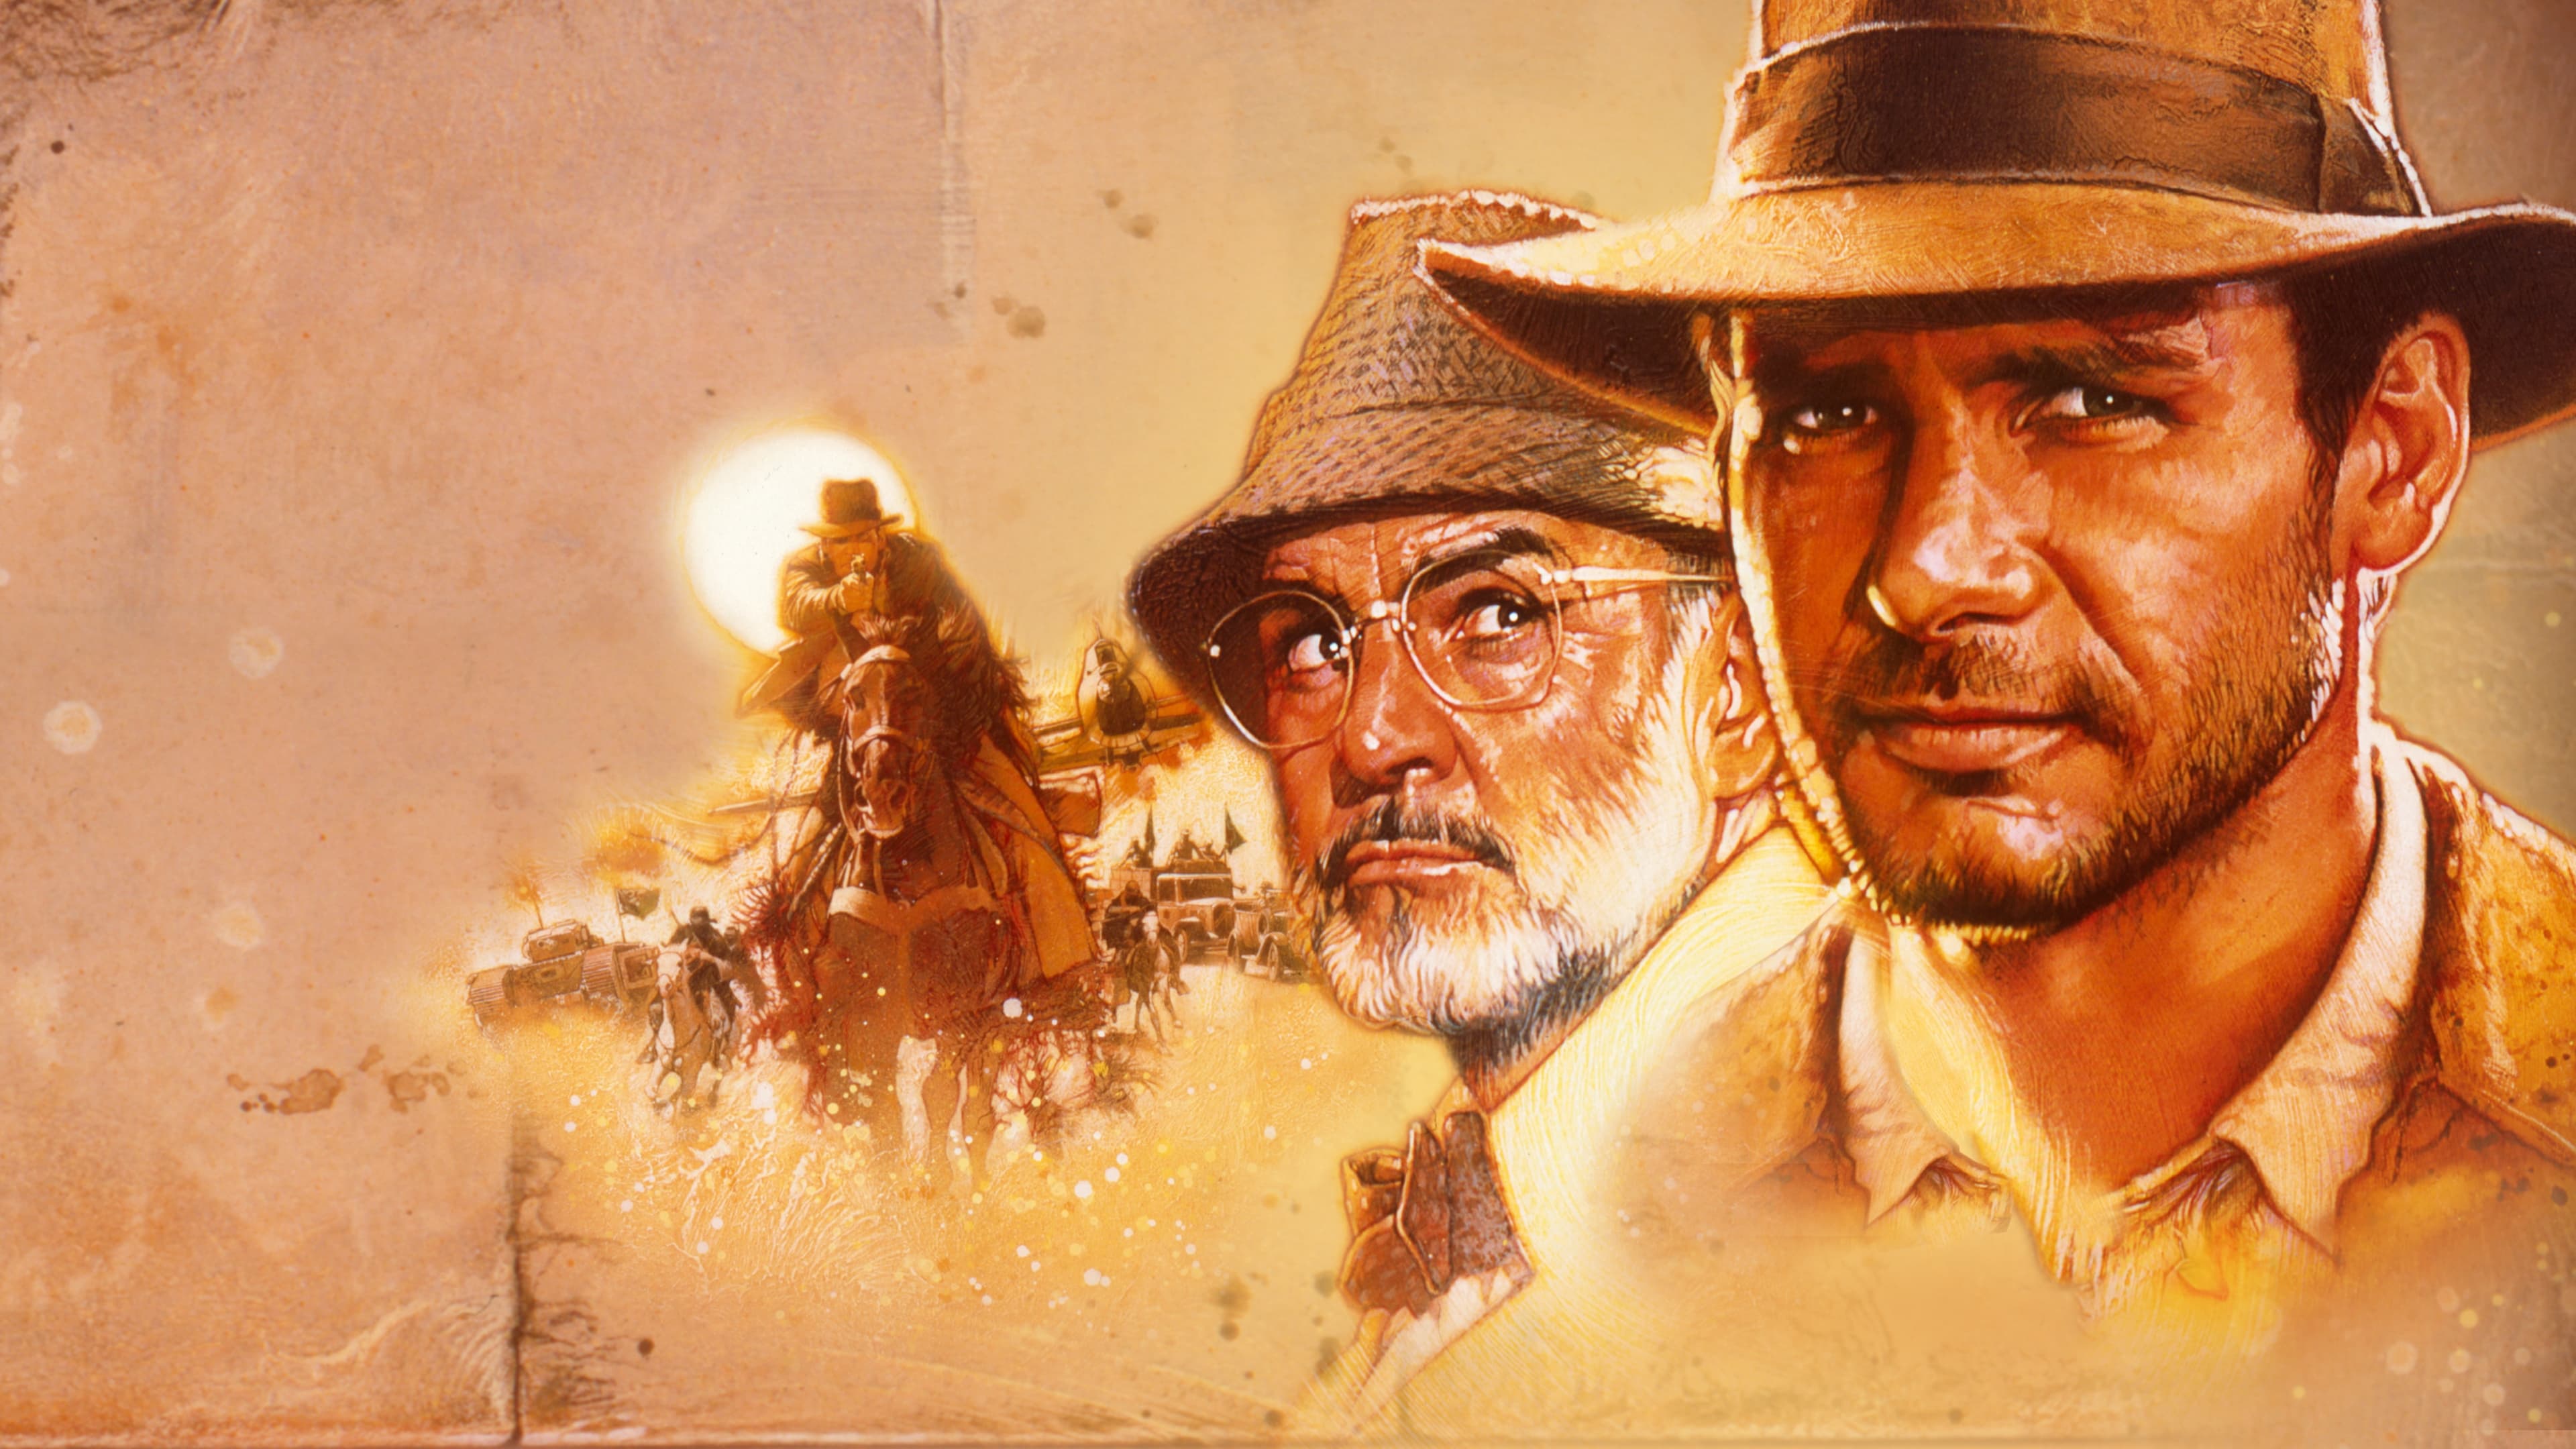 Poster Phim Indiana Jones và Cuộc Thập Tự Chinh Cuối Cùng (Indiana Jones and the Last Crusade)